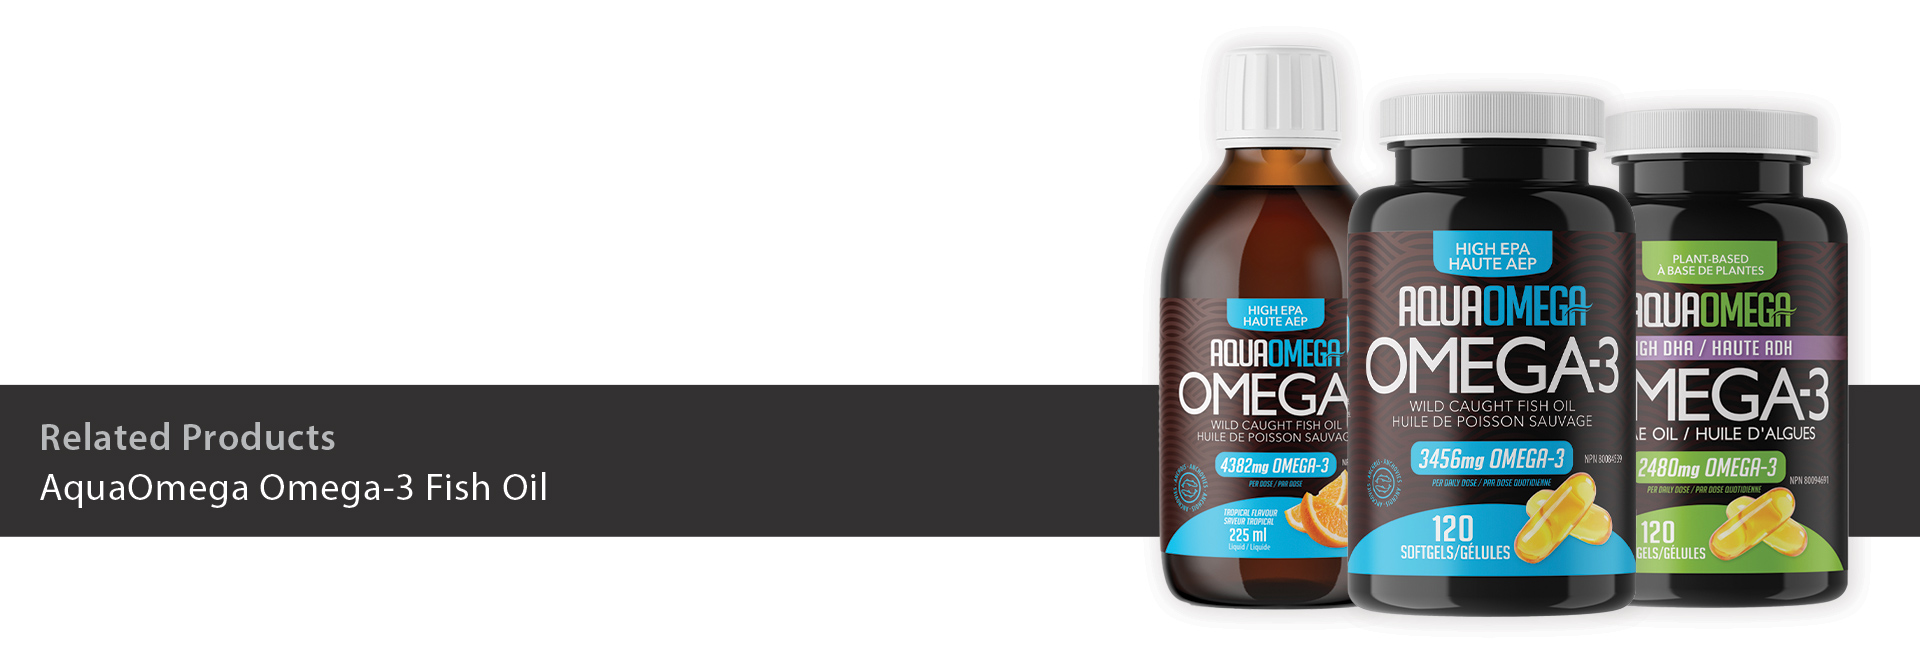 AquaOmega Omega-3 Fish Oil